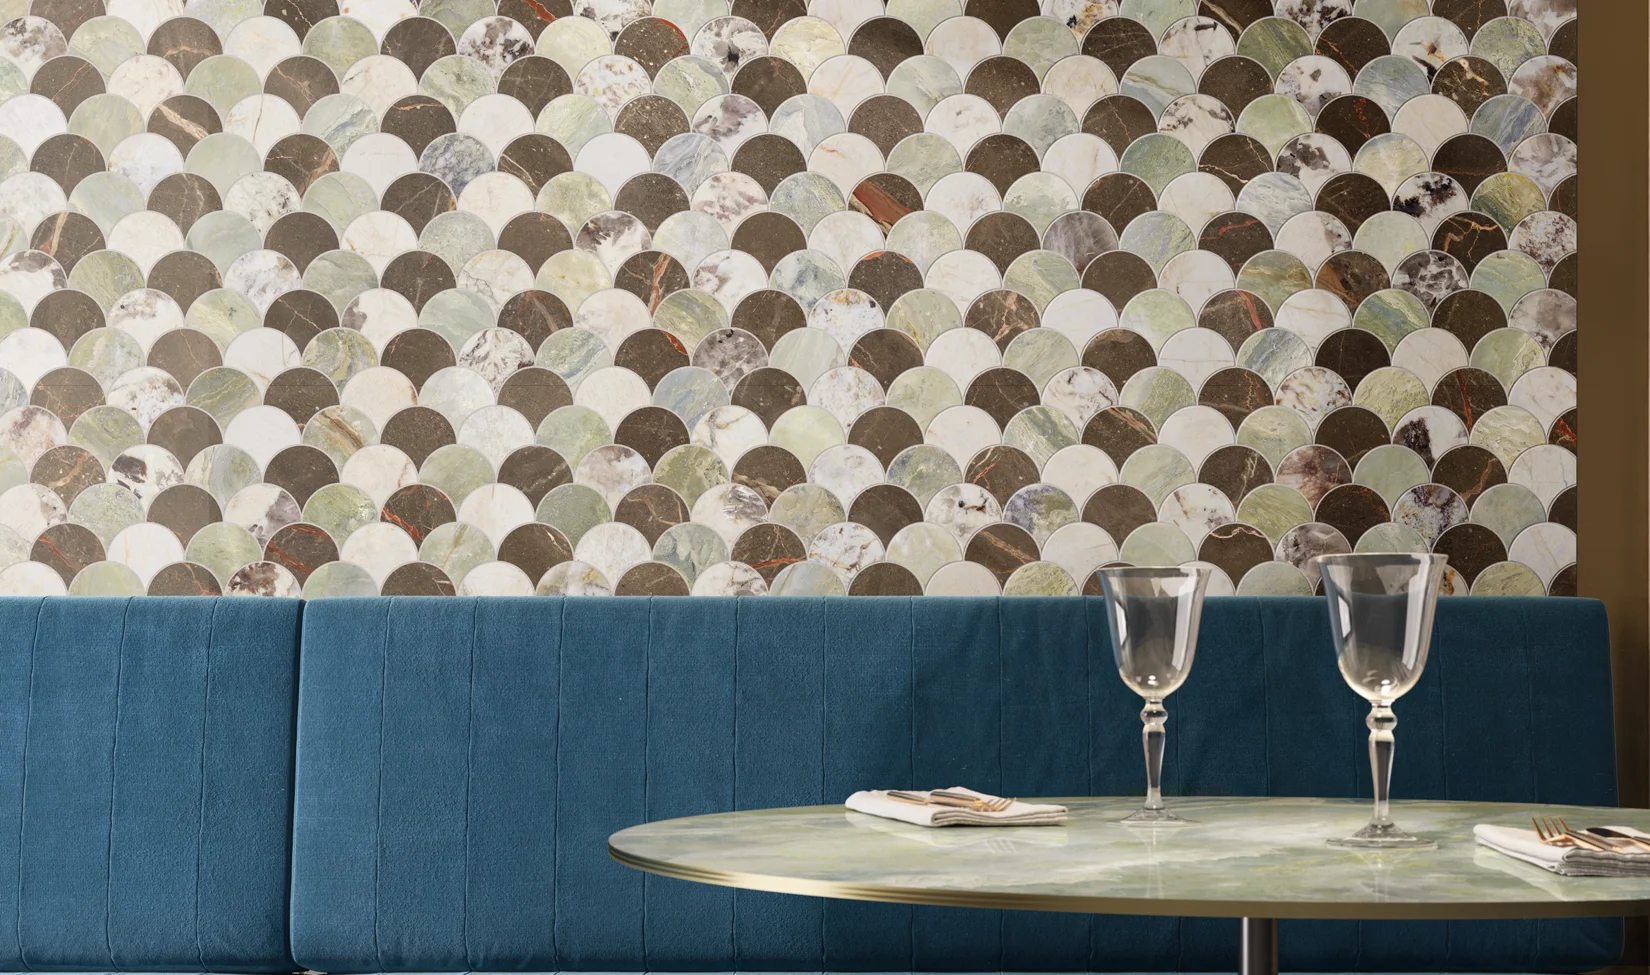 Parete moderna con mosaico 9cento palm mix, piastrelle rotonde multicolore, in contrasto con la panchina blu di una sala da pranzo contemporanea.